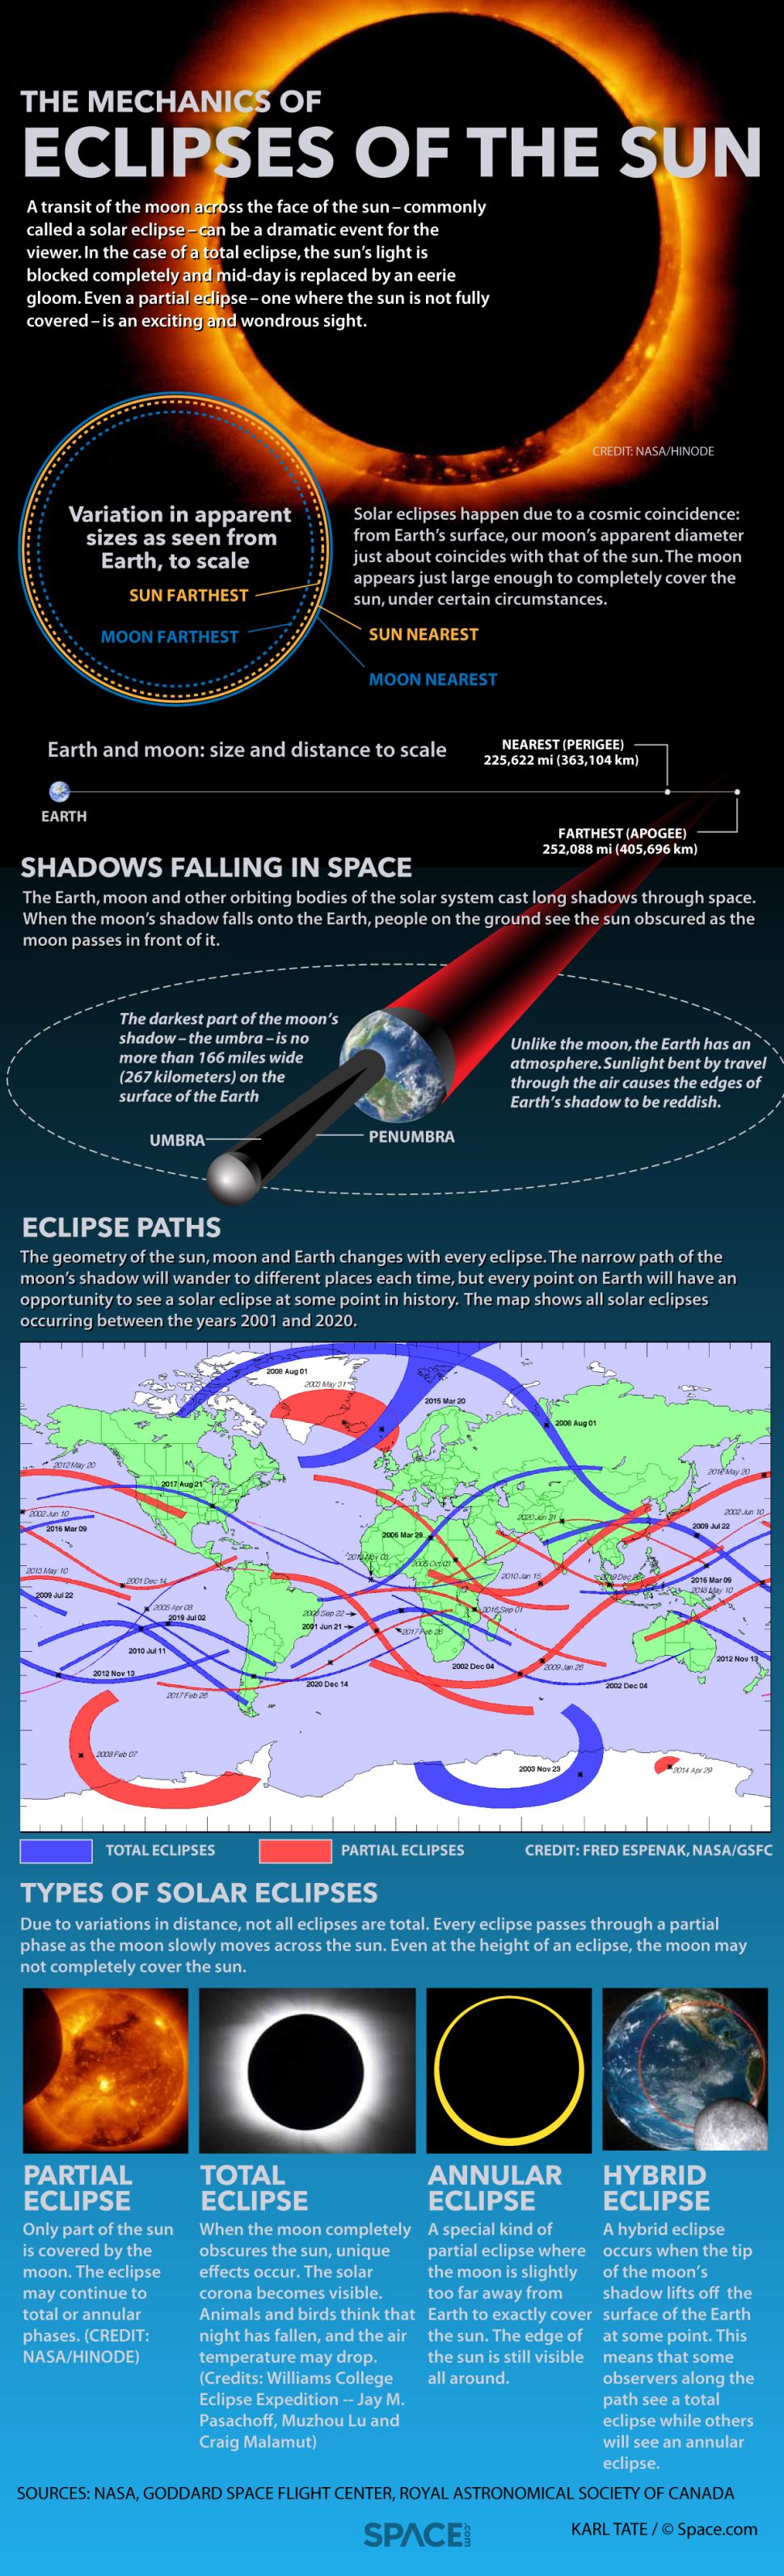 Eclipse: Solar vs Lunar - Explained - ClearIAS